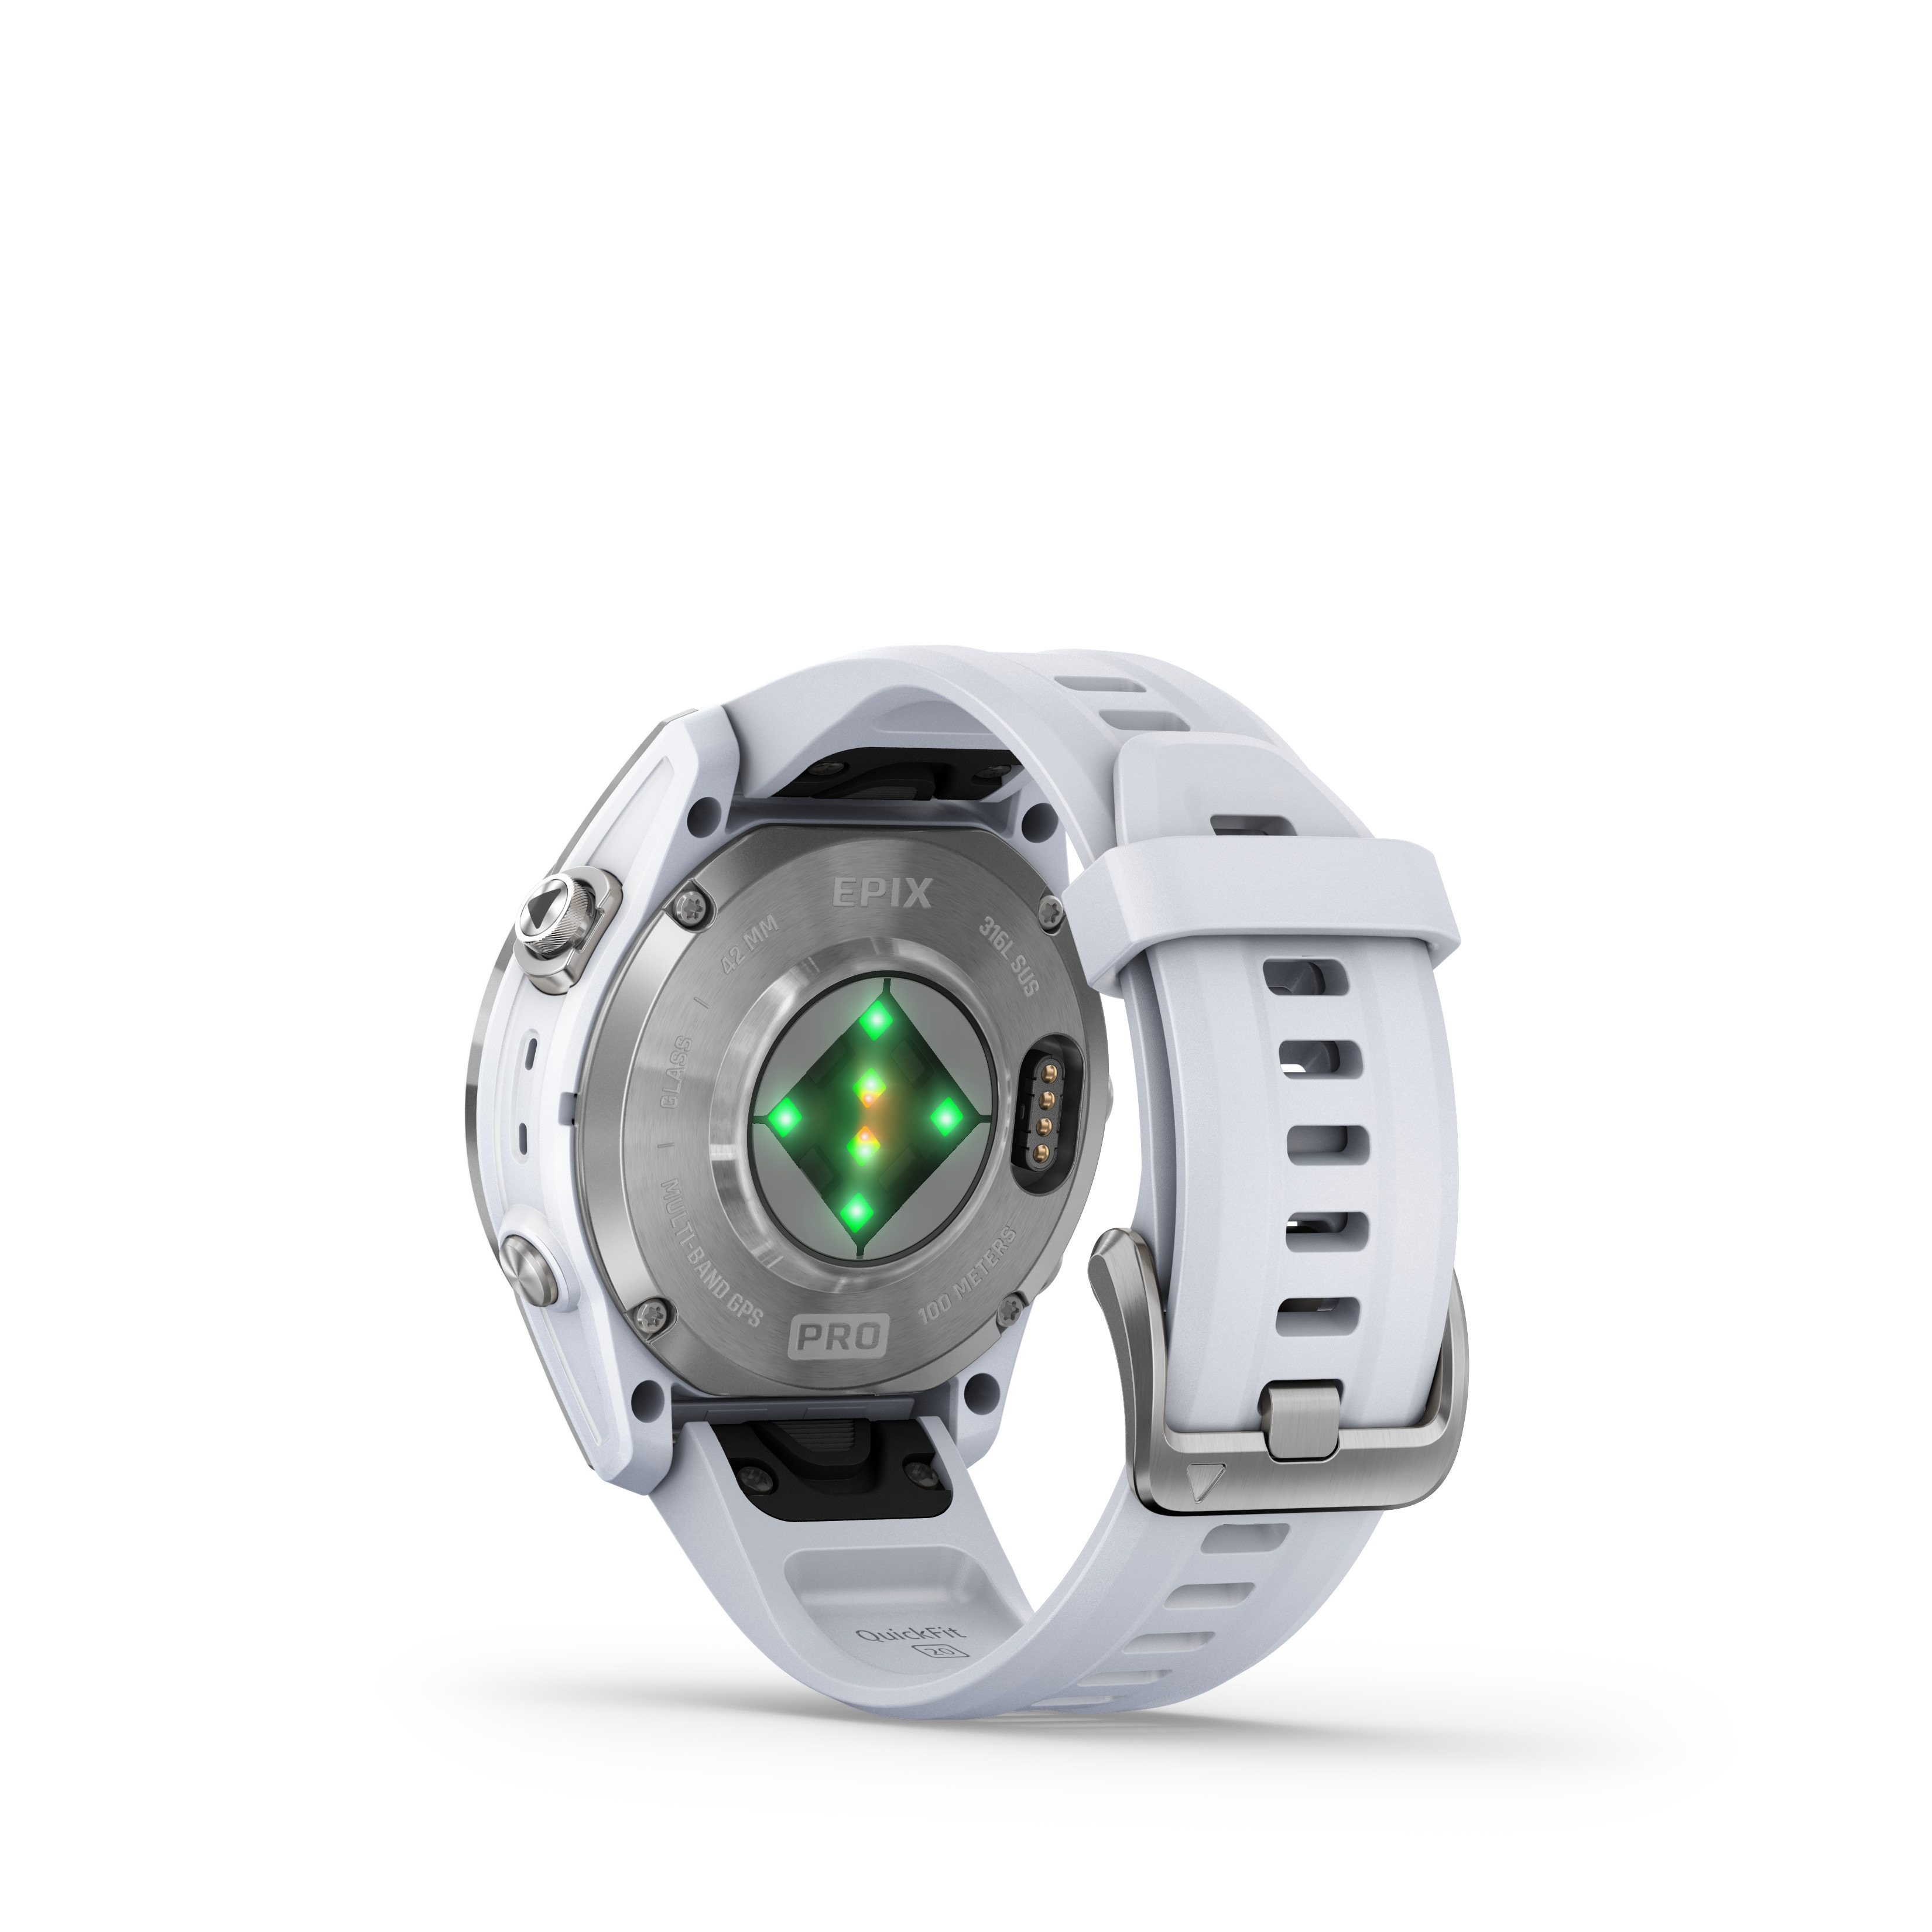 Garmin EPIX PRO (Gen 2) 42mm Multisport-Smartwatch steinweiß ++ Cyberport | alle Smartwatches